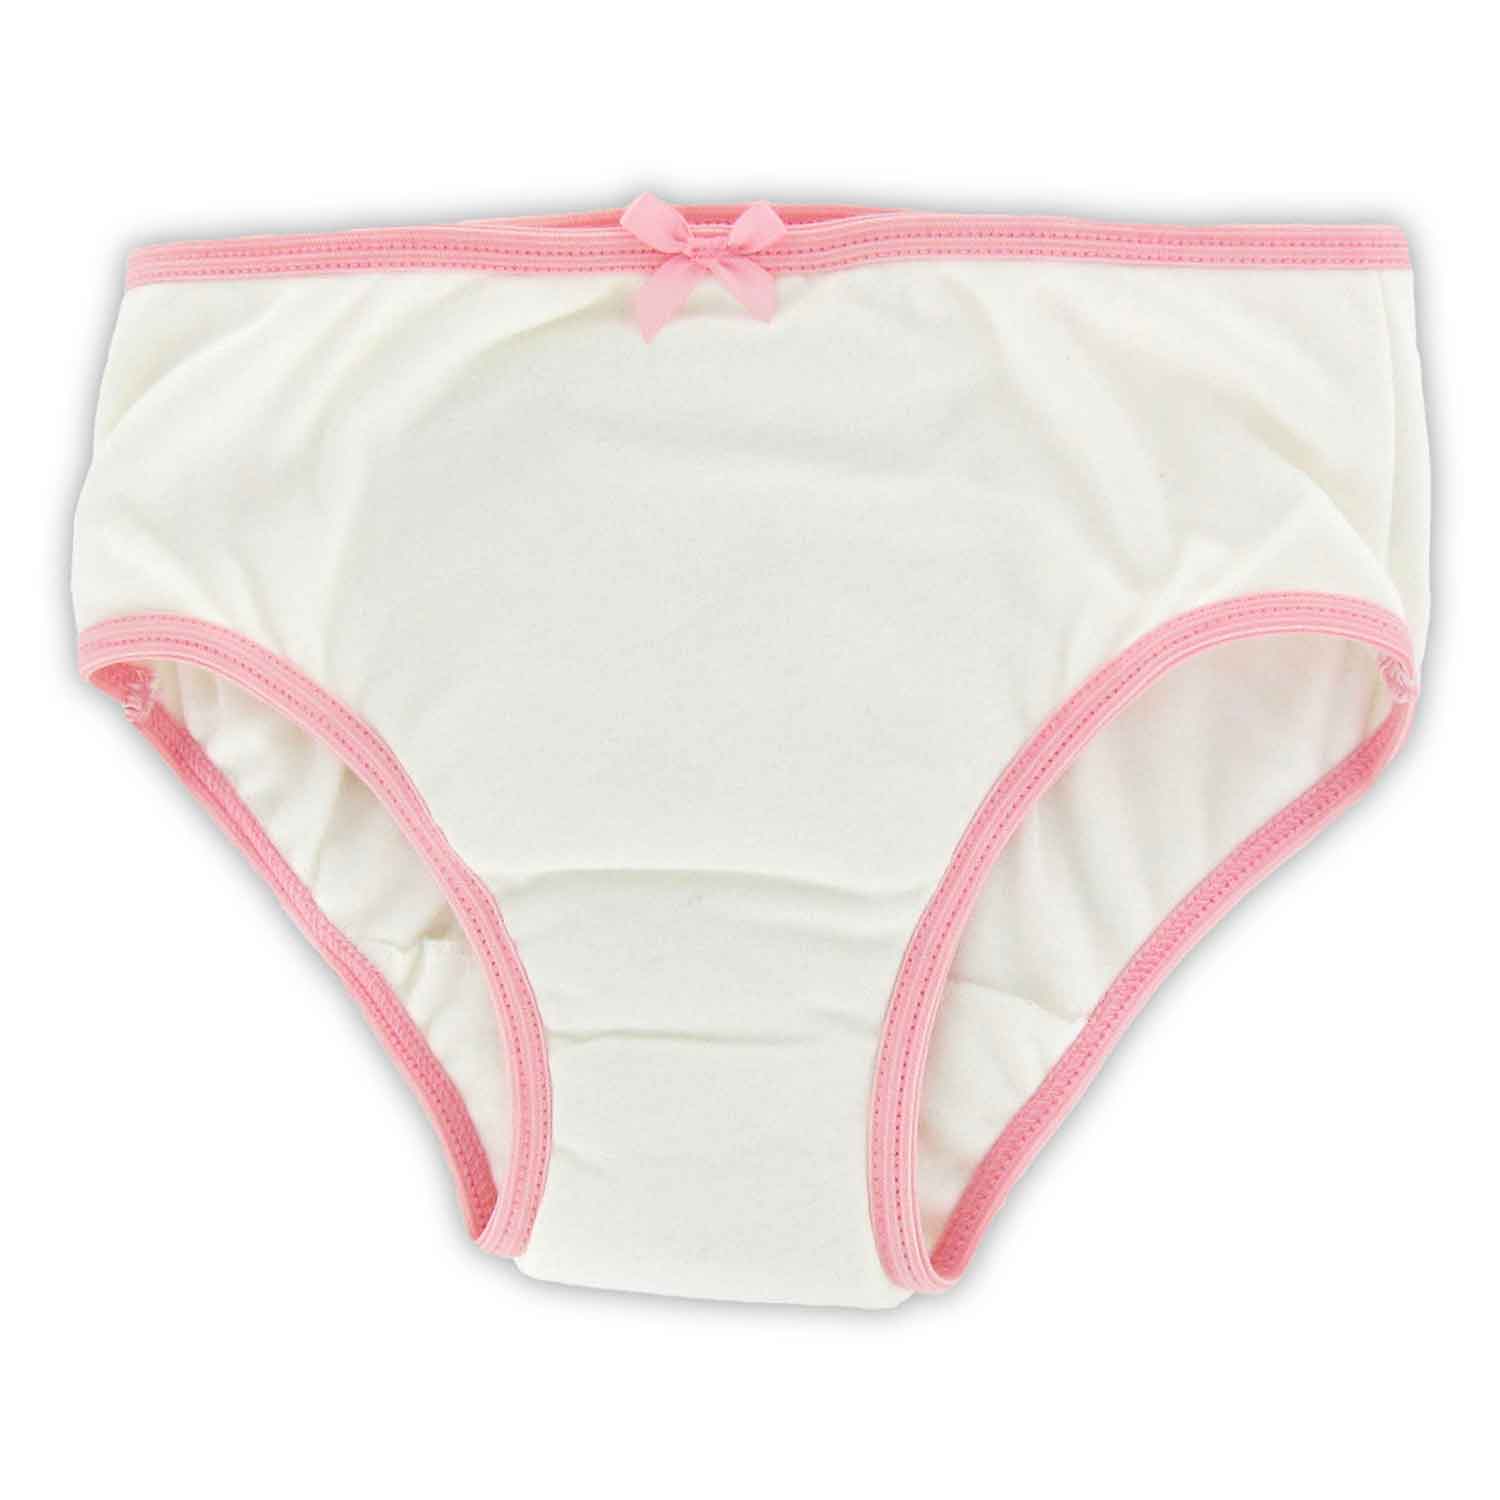 Little Girls Wet Underwear Images - Free Download on Freepik